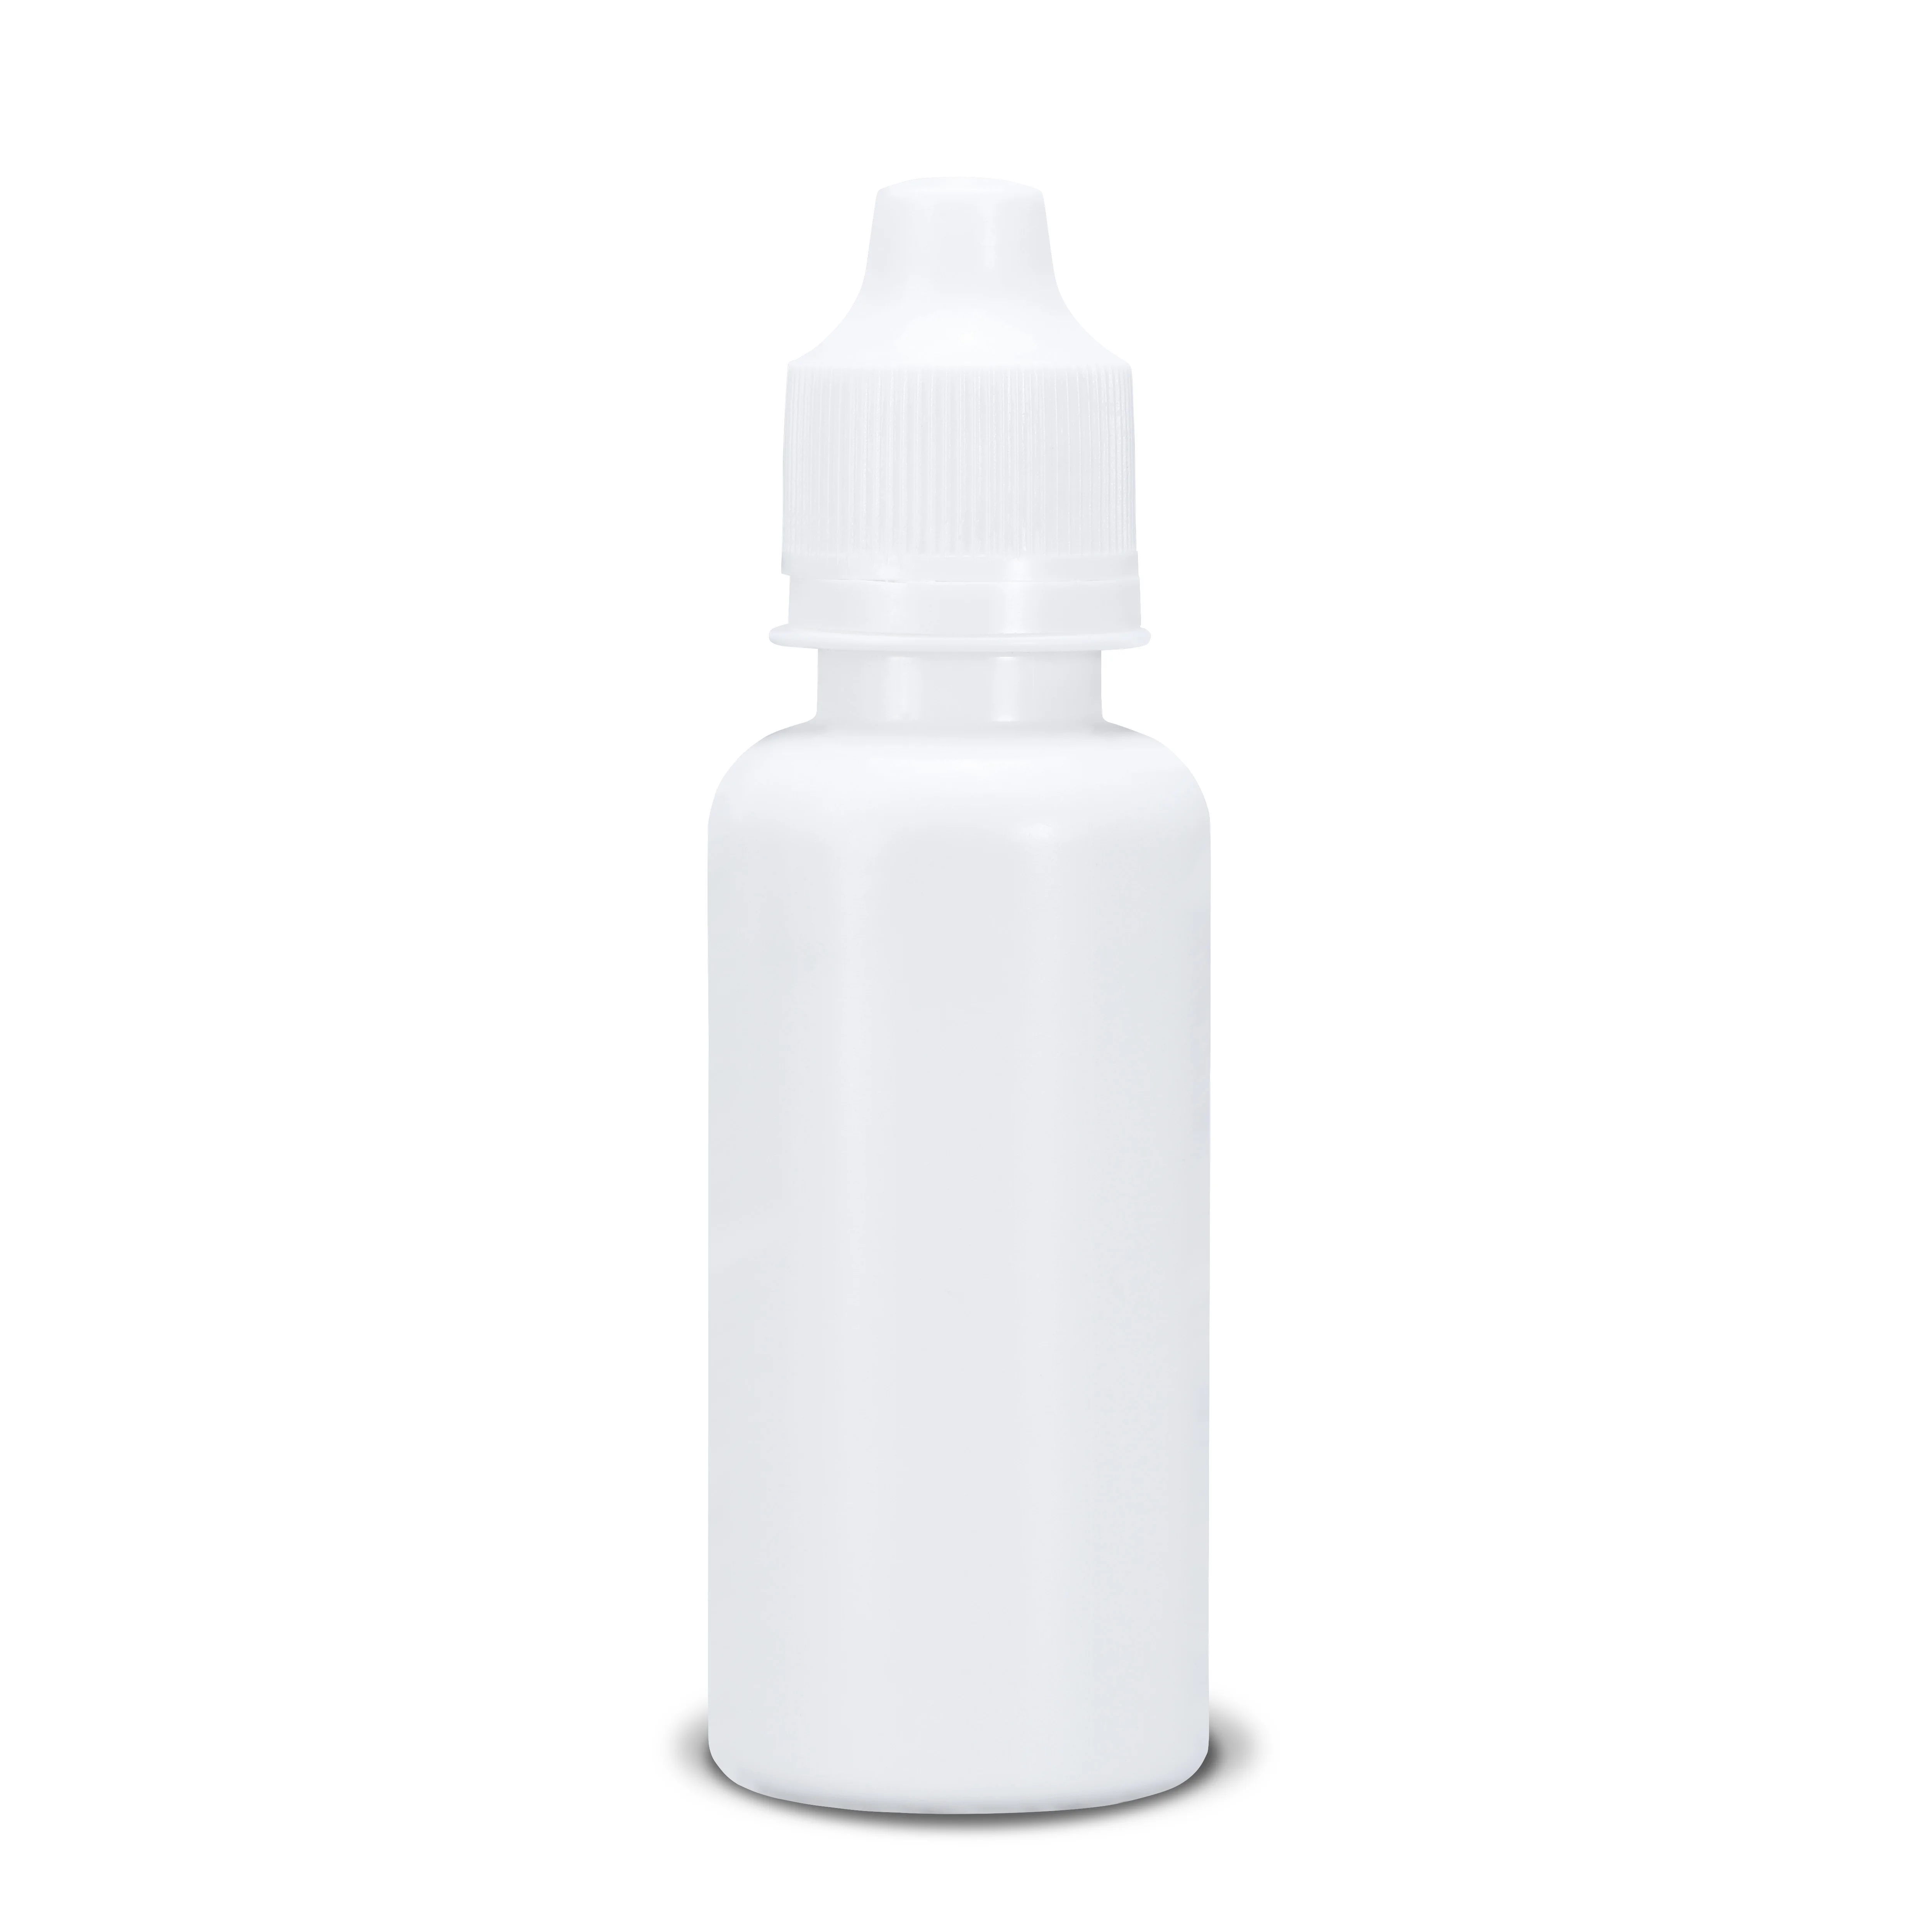 60 мл/120 мл Пустые пластиковые бутылочки-капельницы с защищающей от детей крышкой жидкость для глаз, масло, клей многоразовая бутылка горячая распродажа